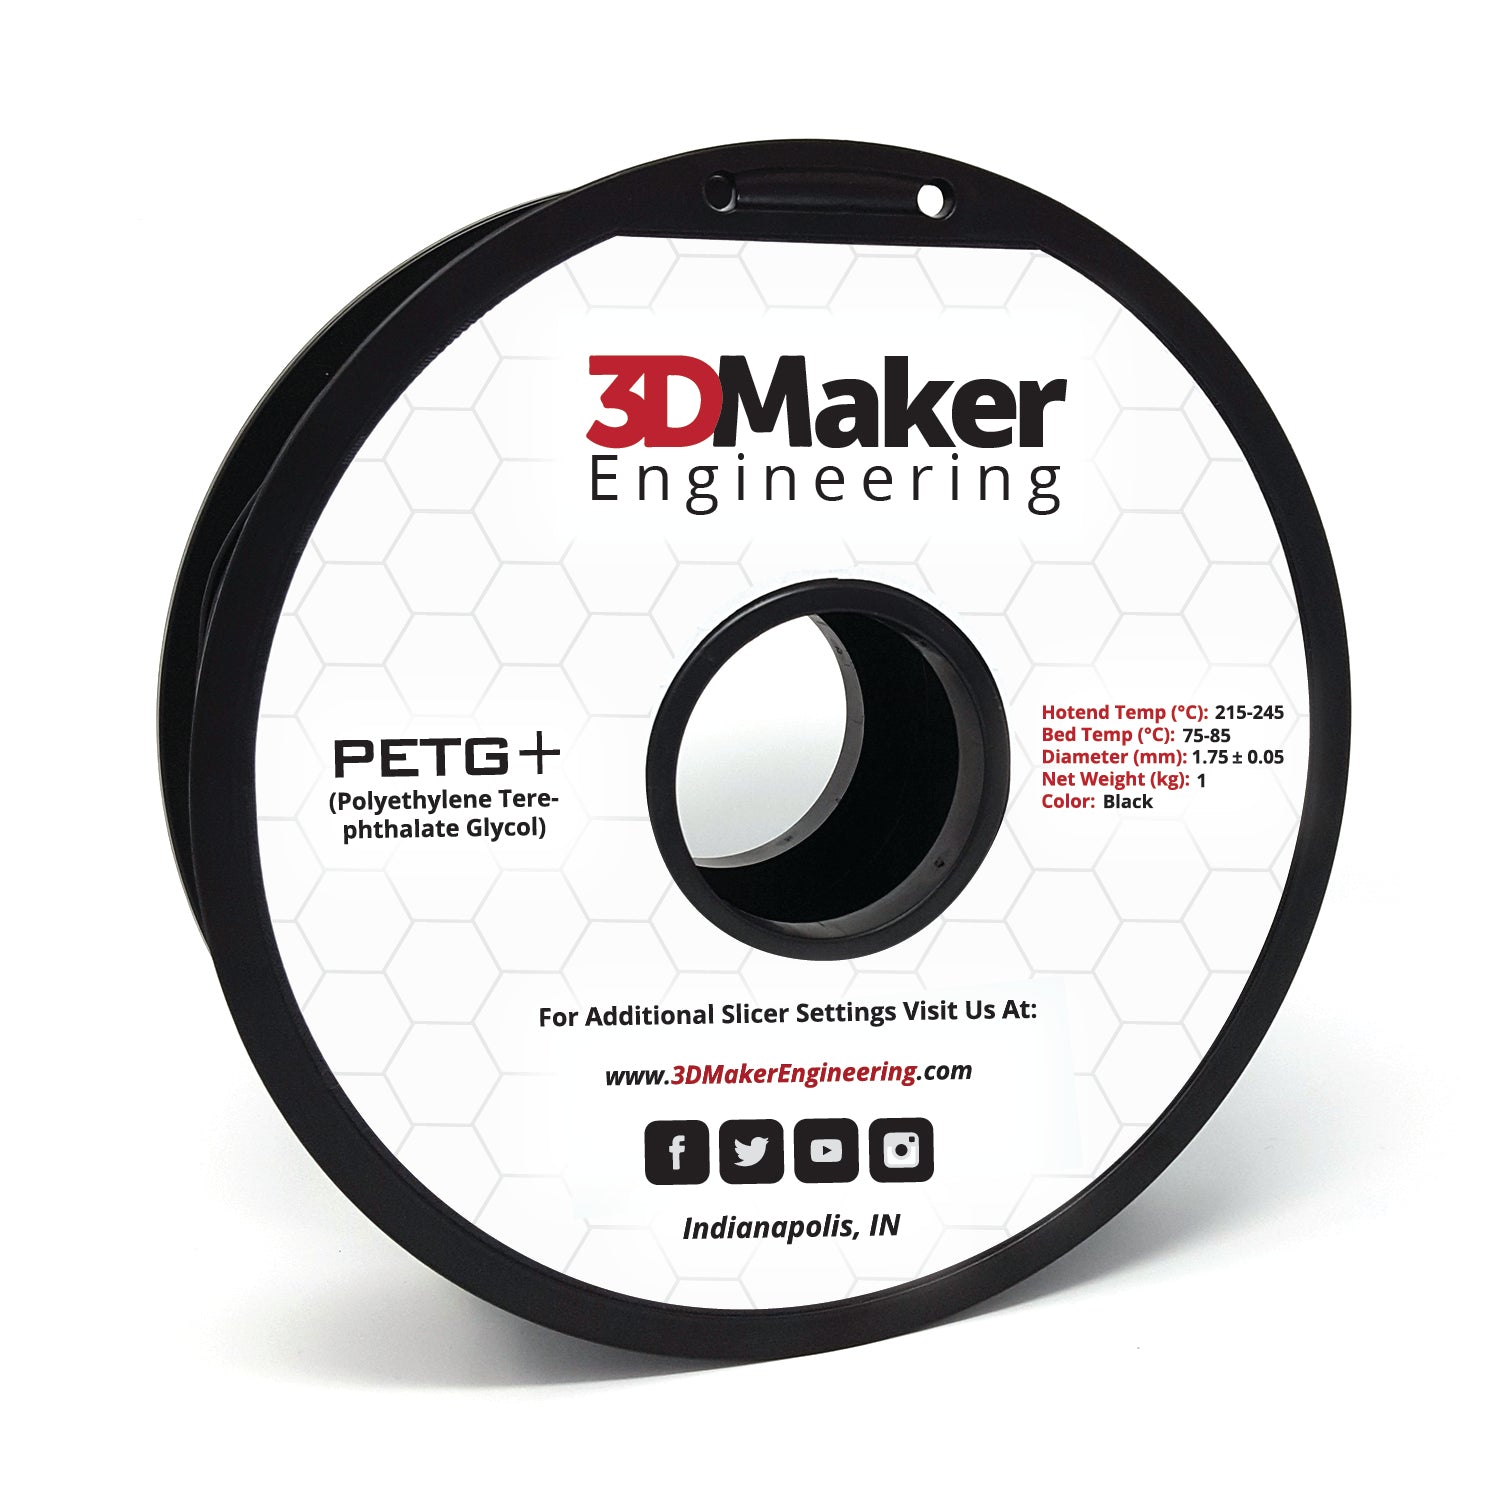 JUSTMAKER PETG Pro (PETG+) 3D Printer Filament Bundle, Updated